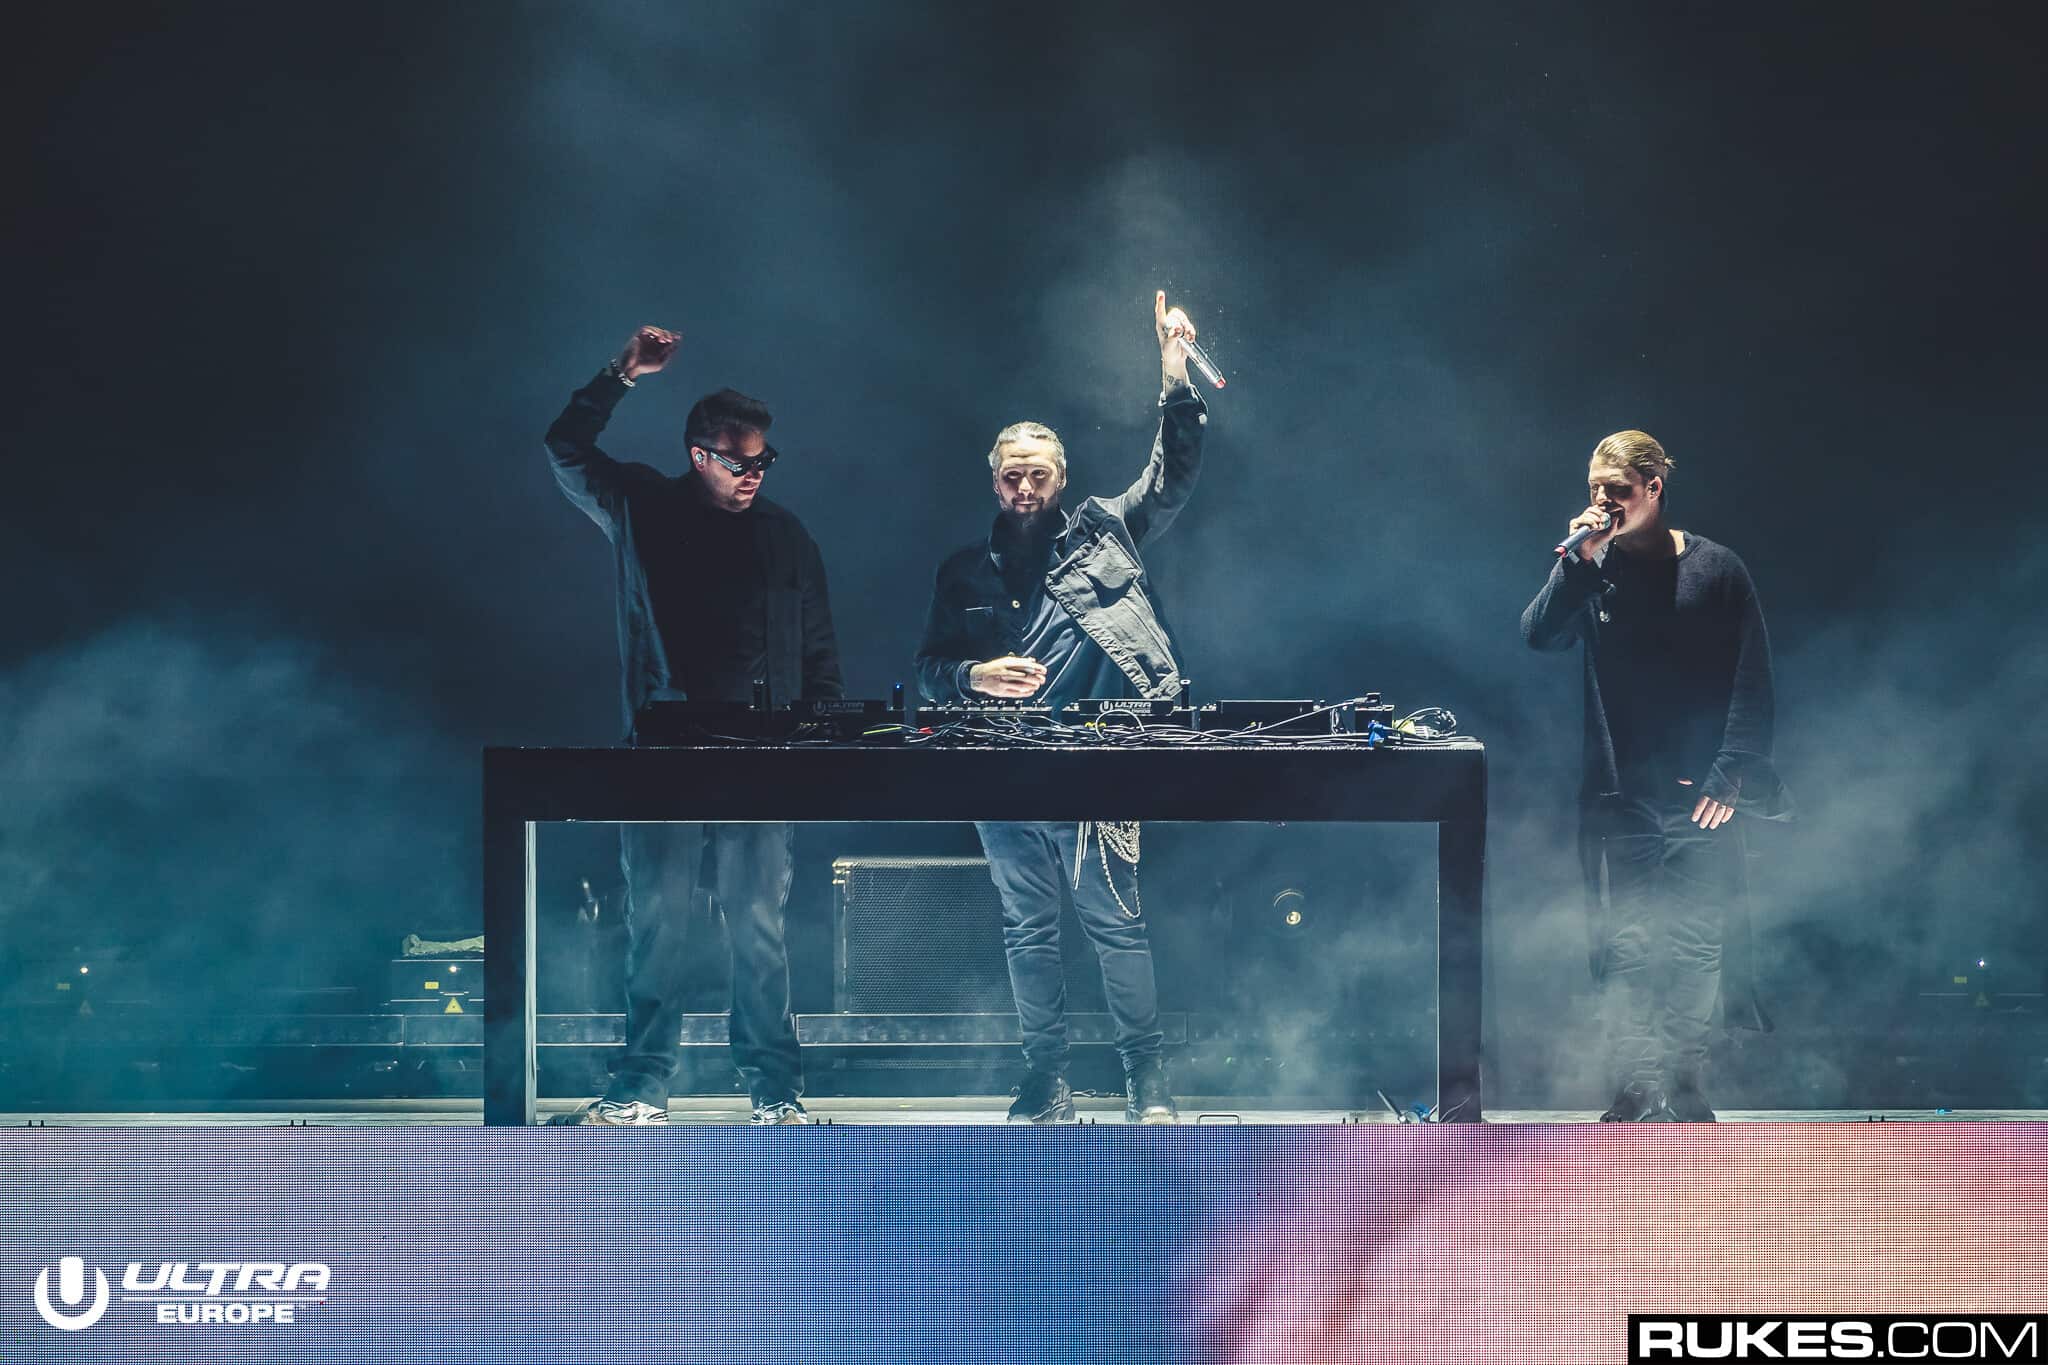 Swedish House Mafia set to play secret gig tonight